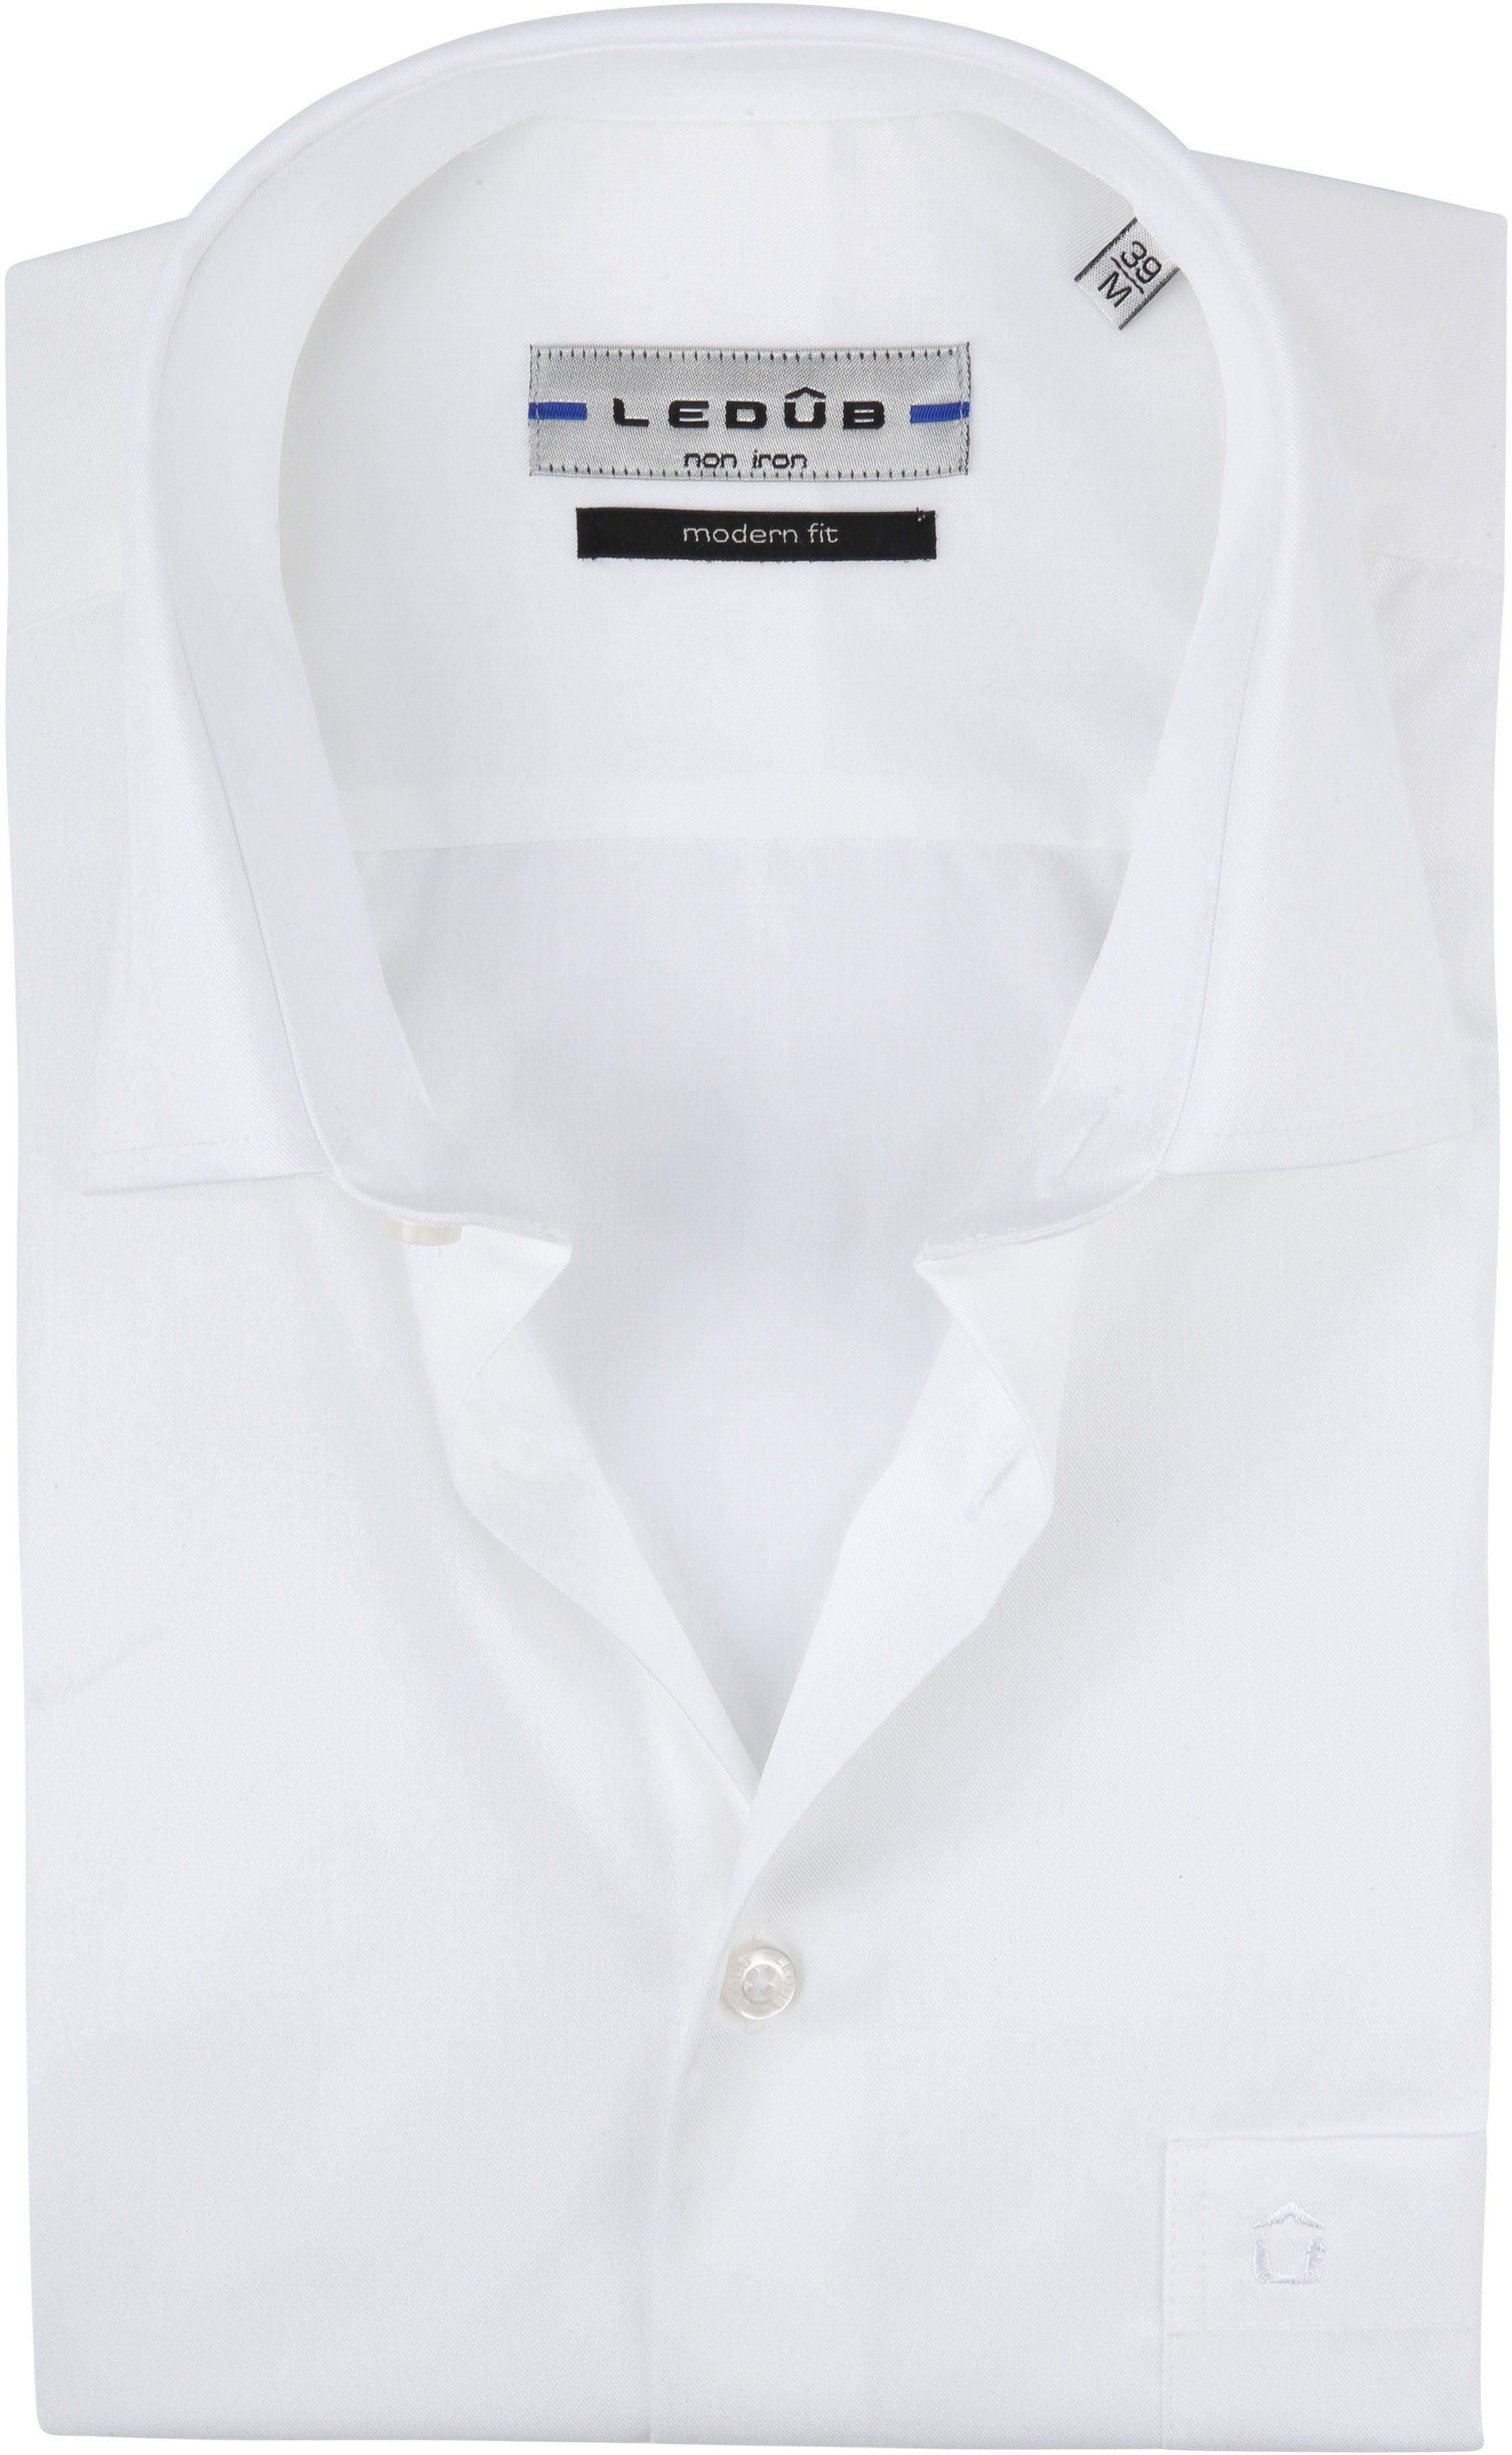 Ledub Shirt Short Sleeve MF White size 15